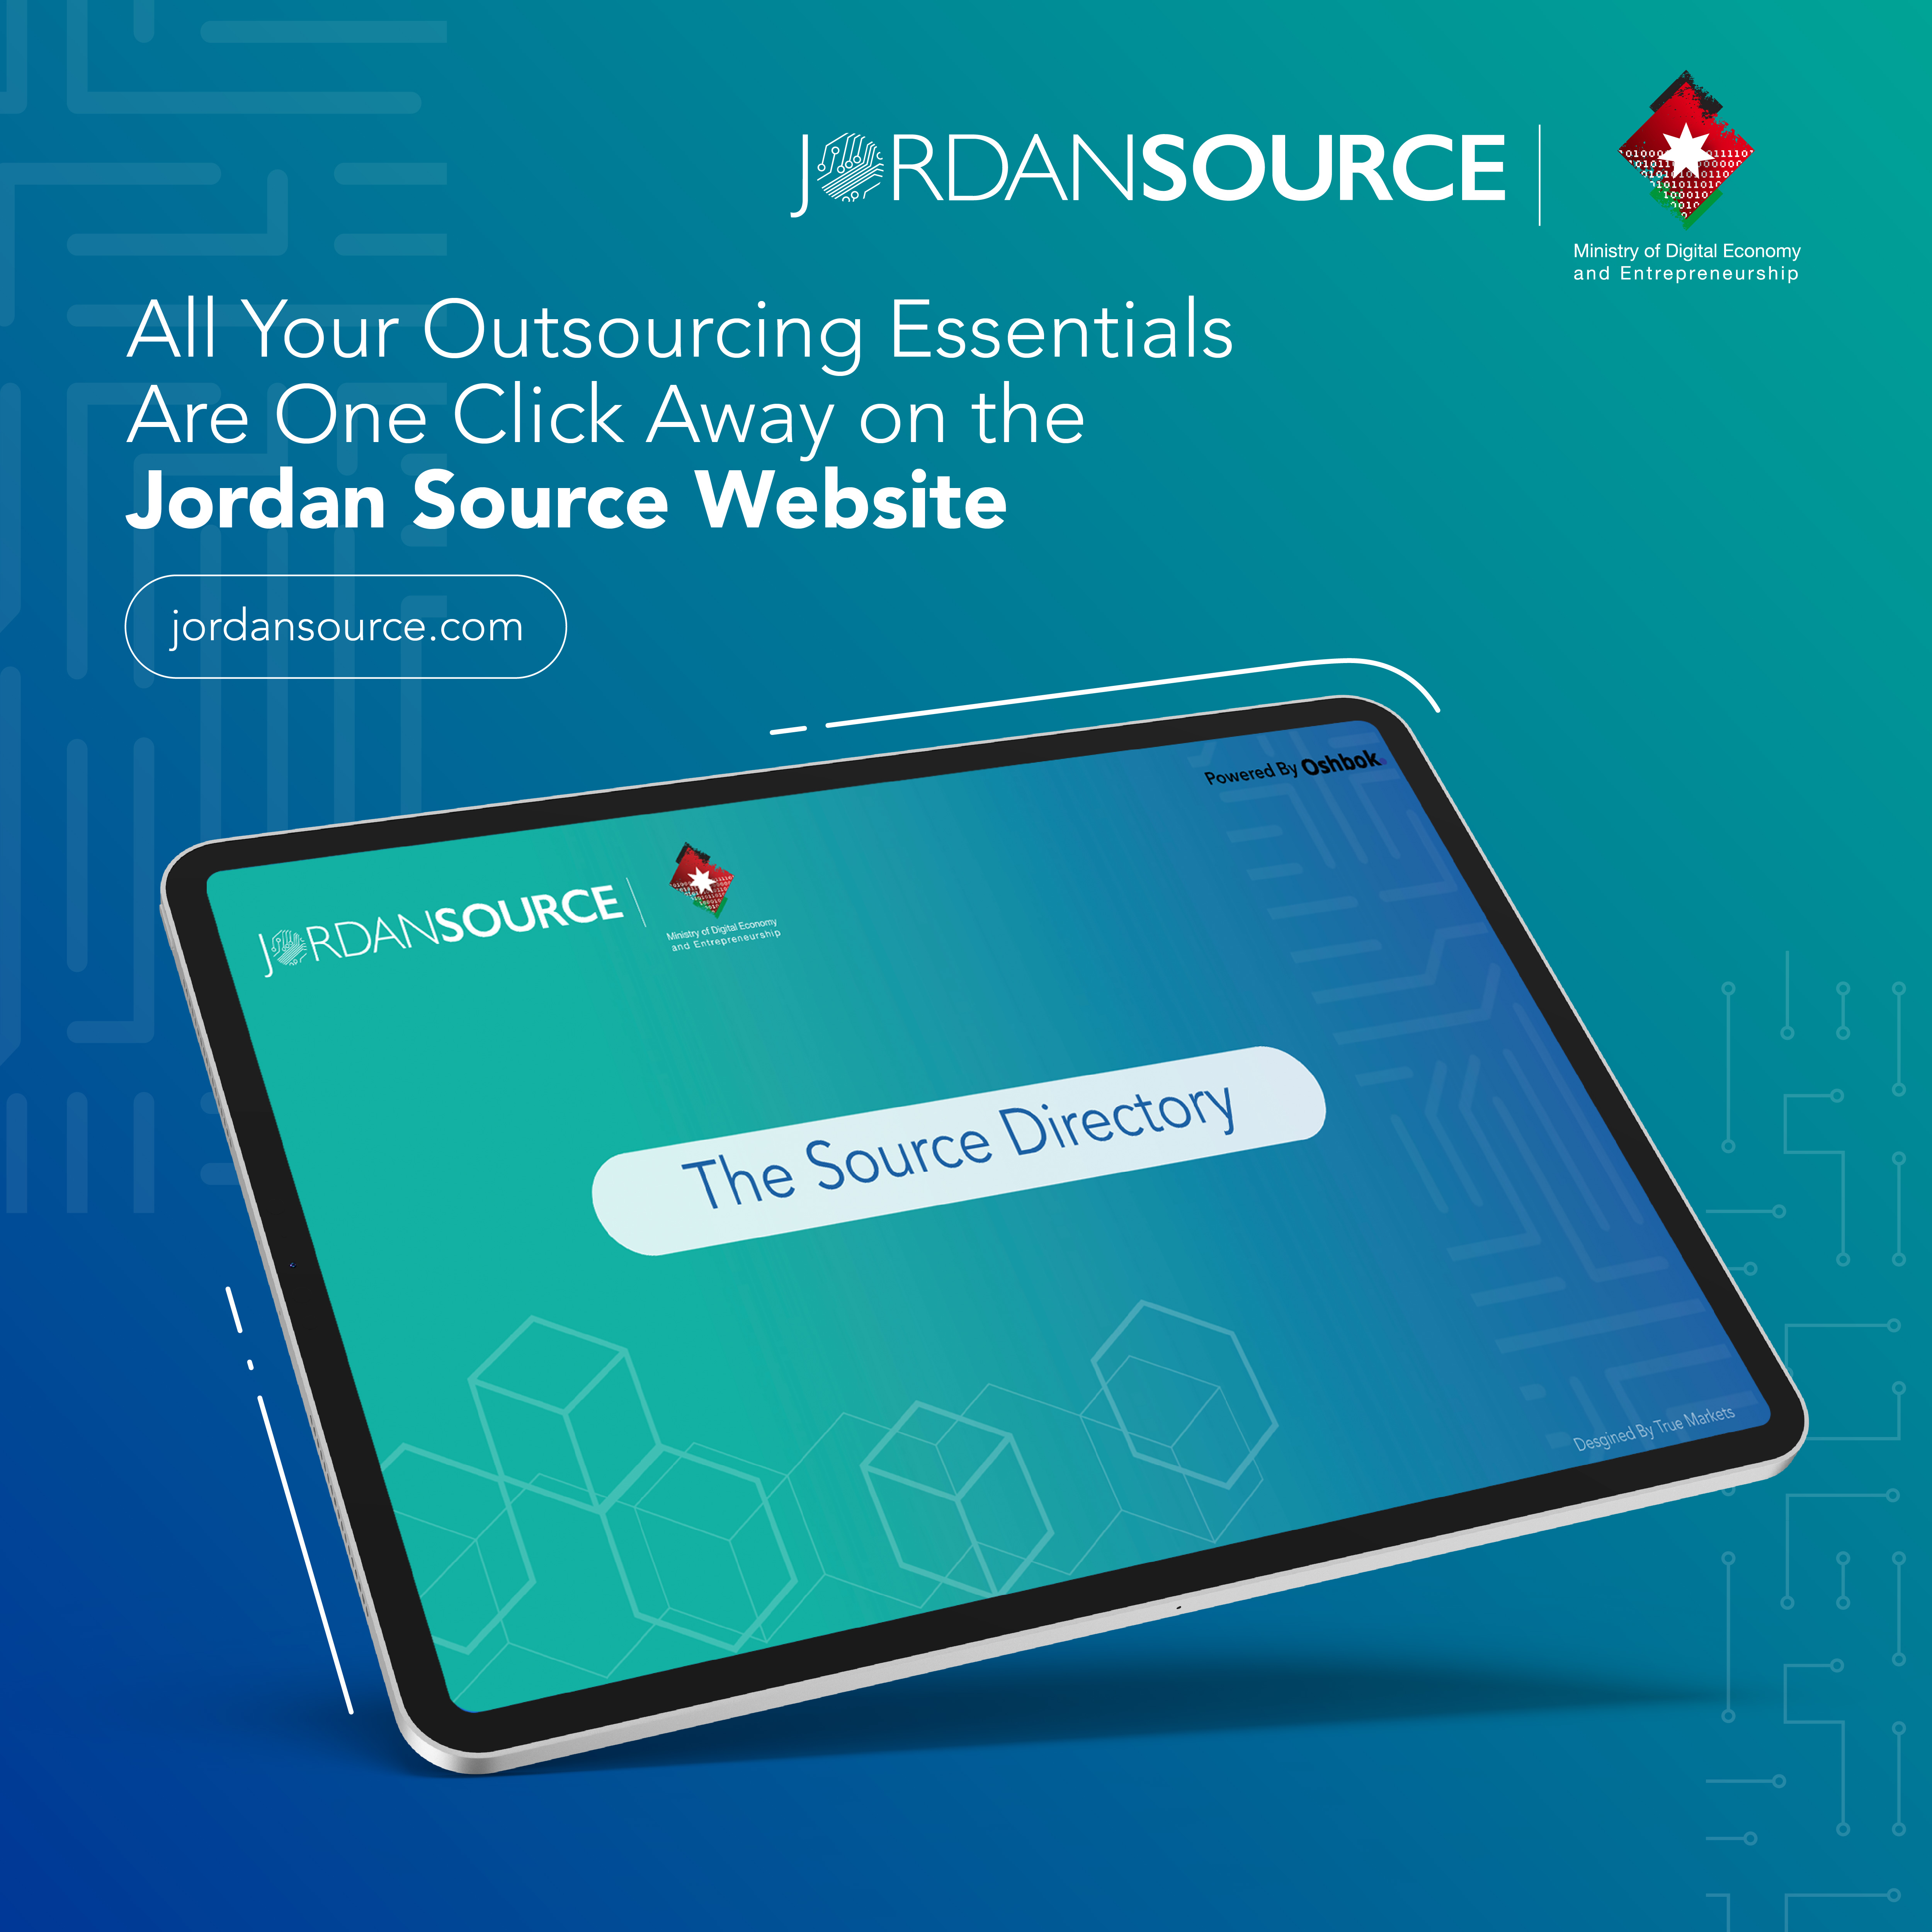 برنامج Jordan Source يطلق رسمياً البوابة الإلكترونية الشاملة لقطاع التعهيد الخارجي والألعاب الإلكترونية 《The Source Directory》